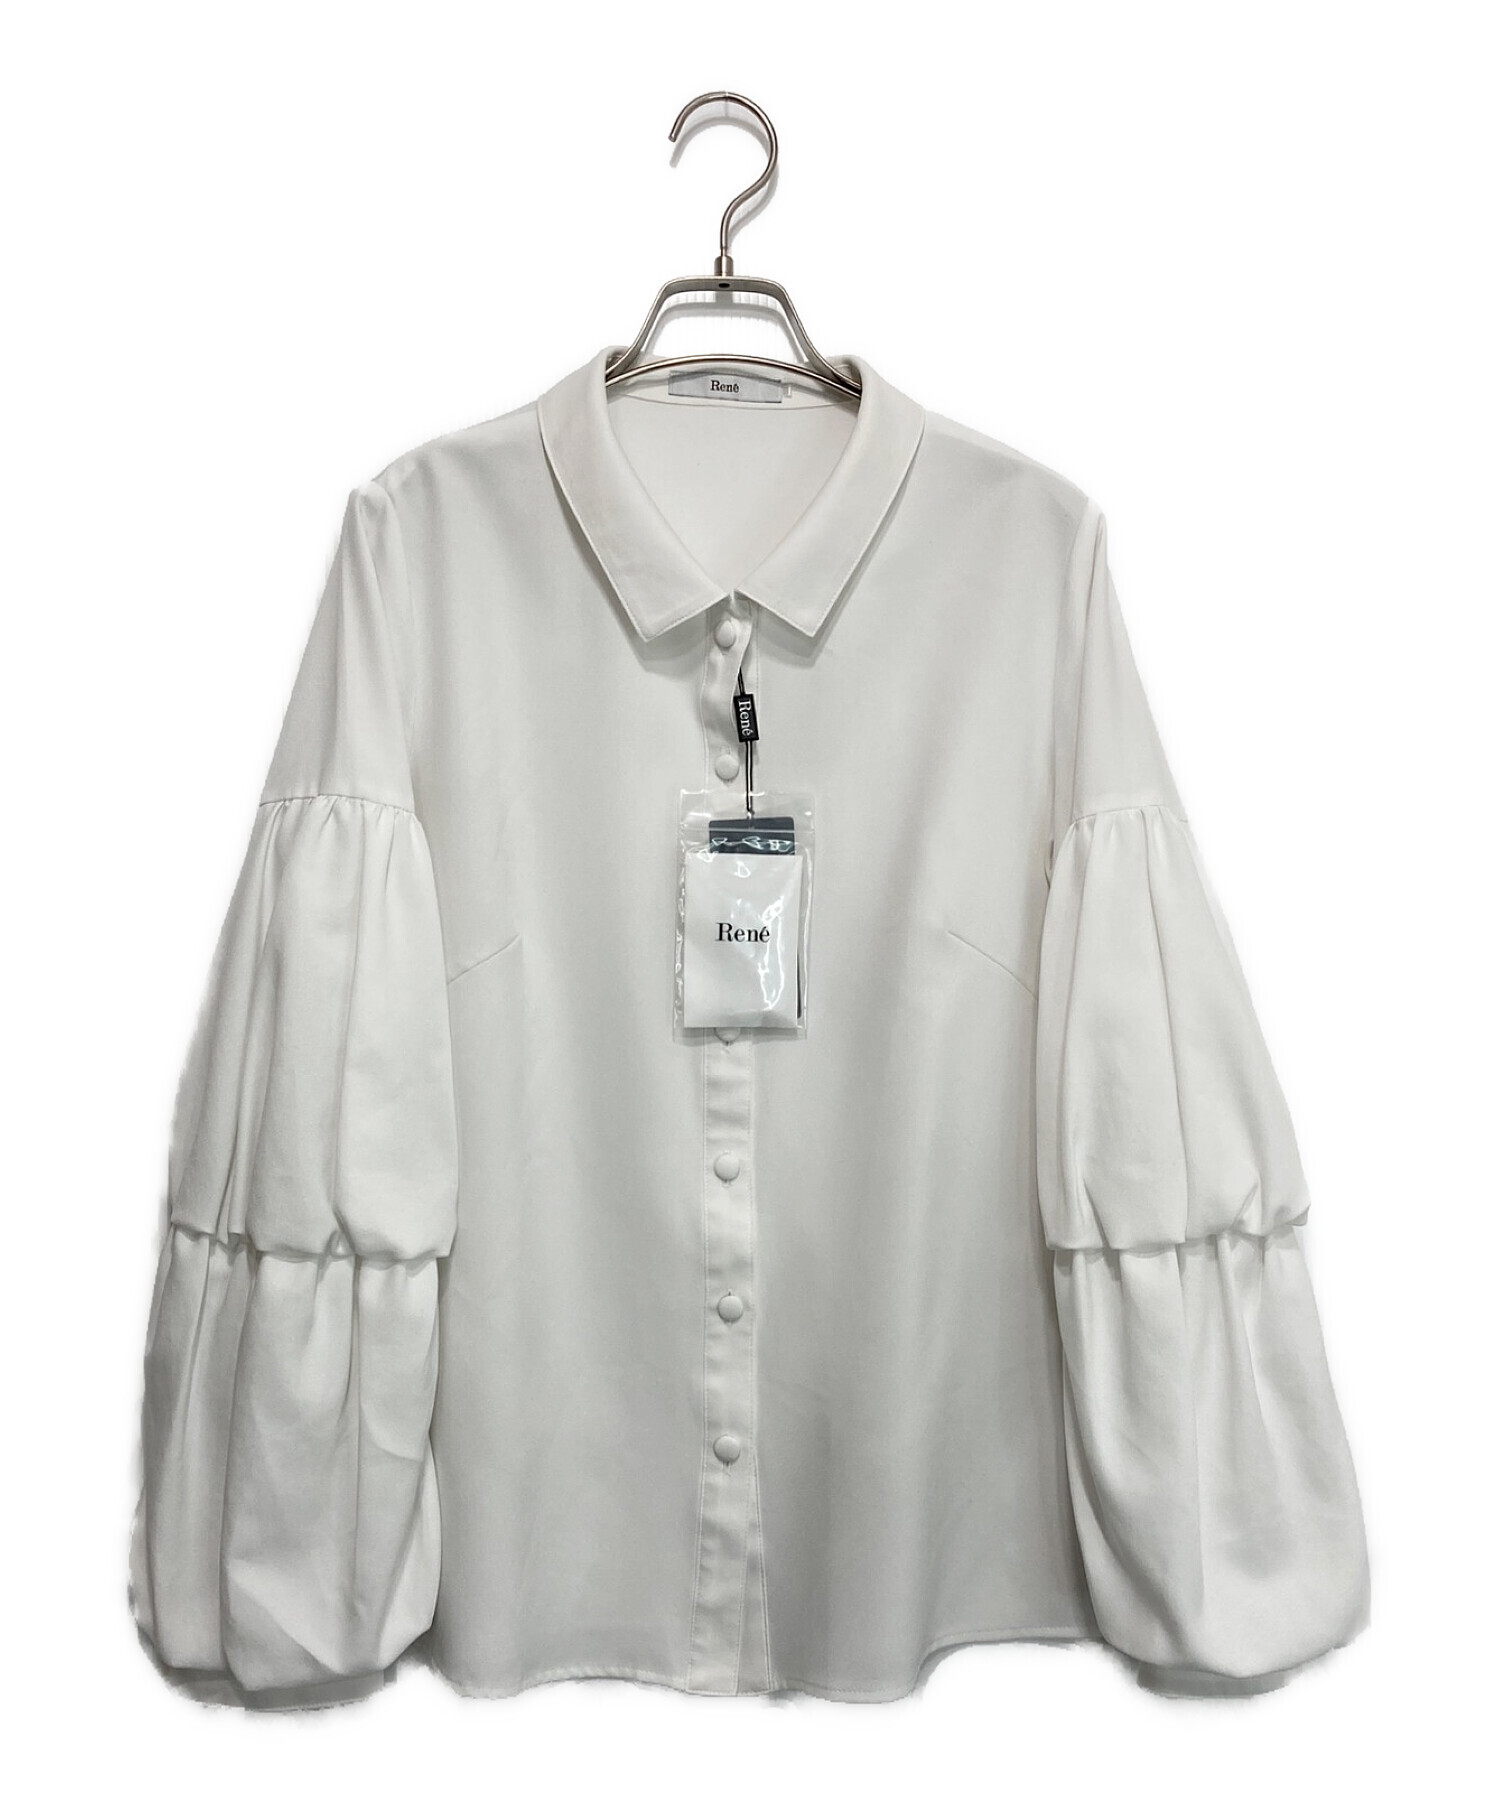 100％品質 Rene' ブラウス38サイズ シャツ/ブラウス(半袖/袖なし ...